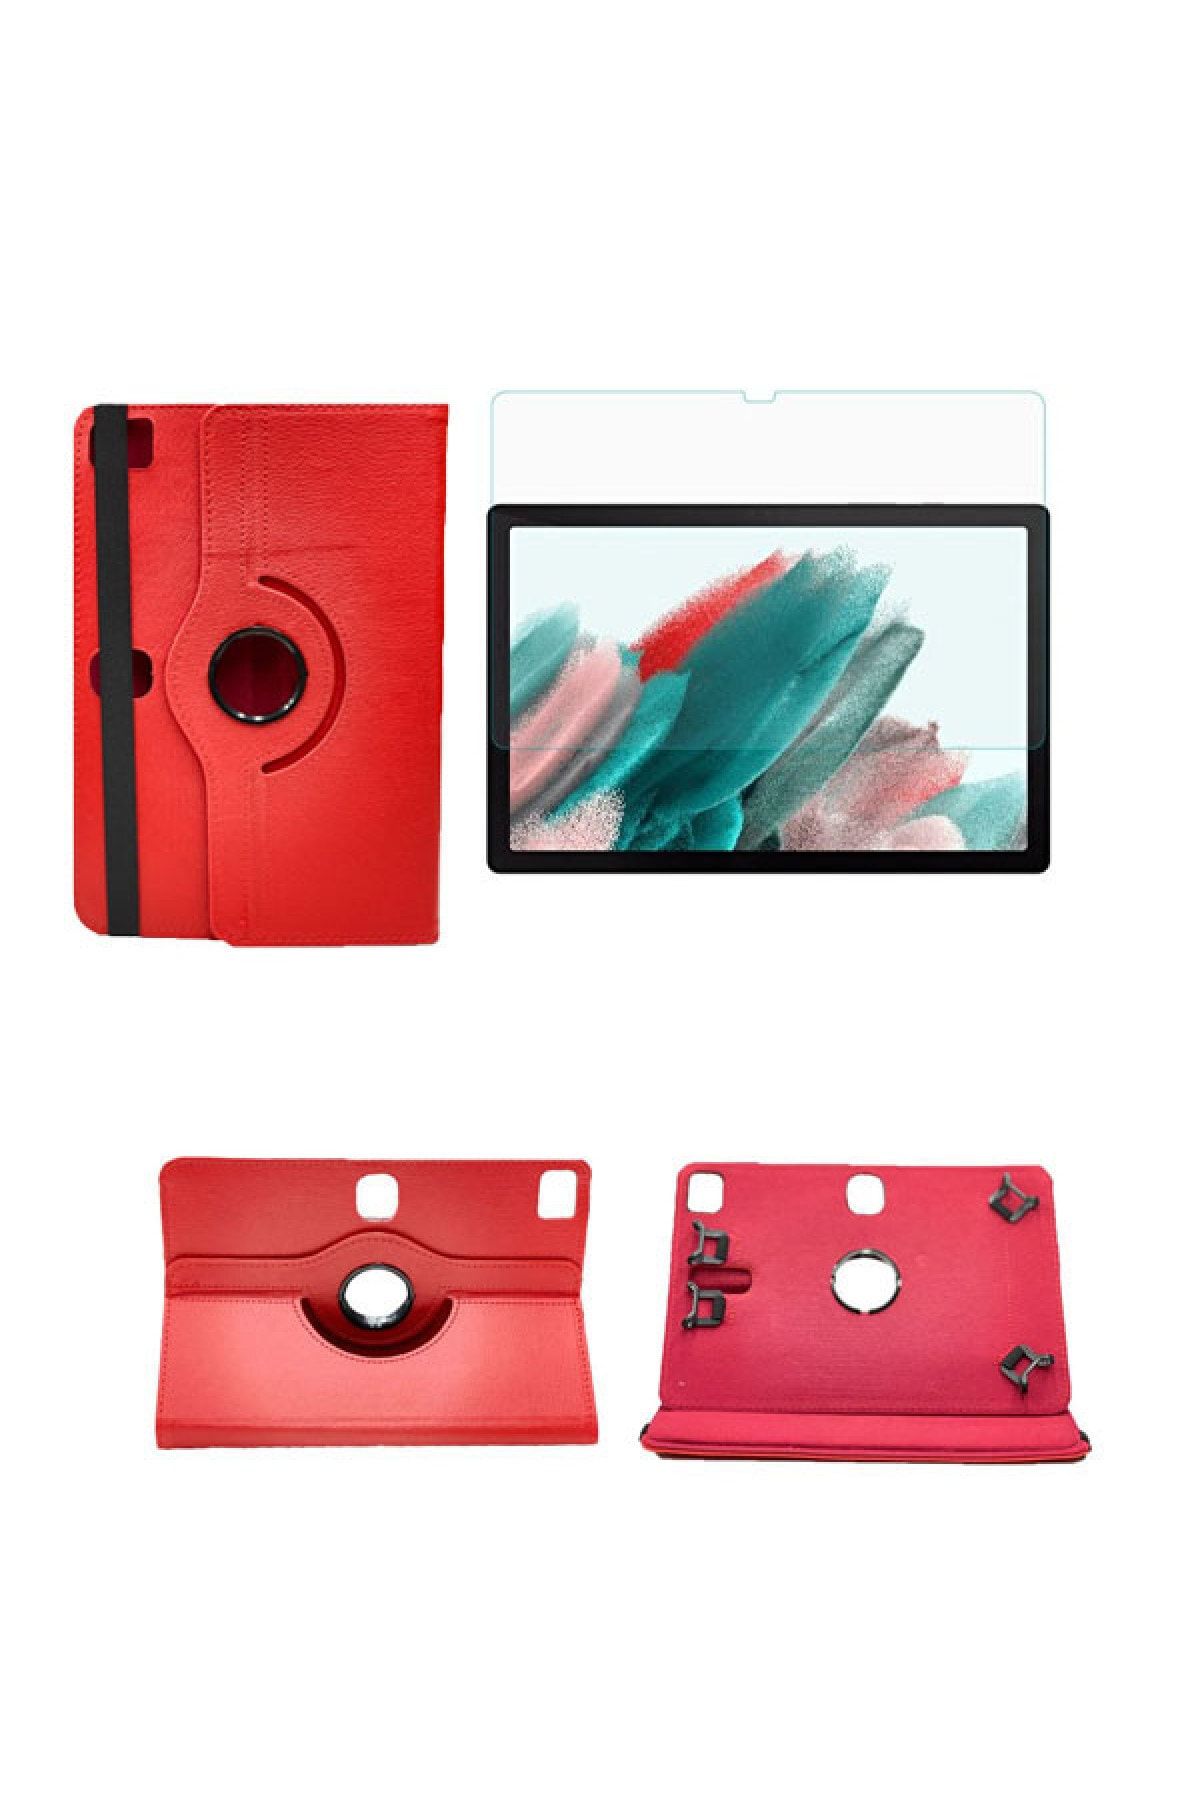 piblue Hometech Elite Tab 360°dönerli Unıversal Tablet Kılıfı + Ekran Koruyucu